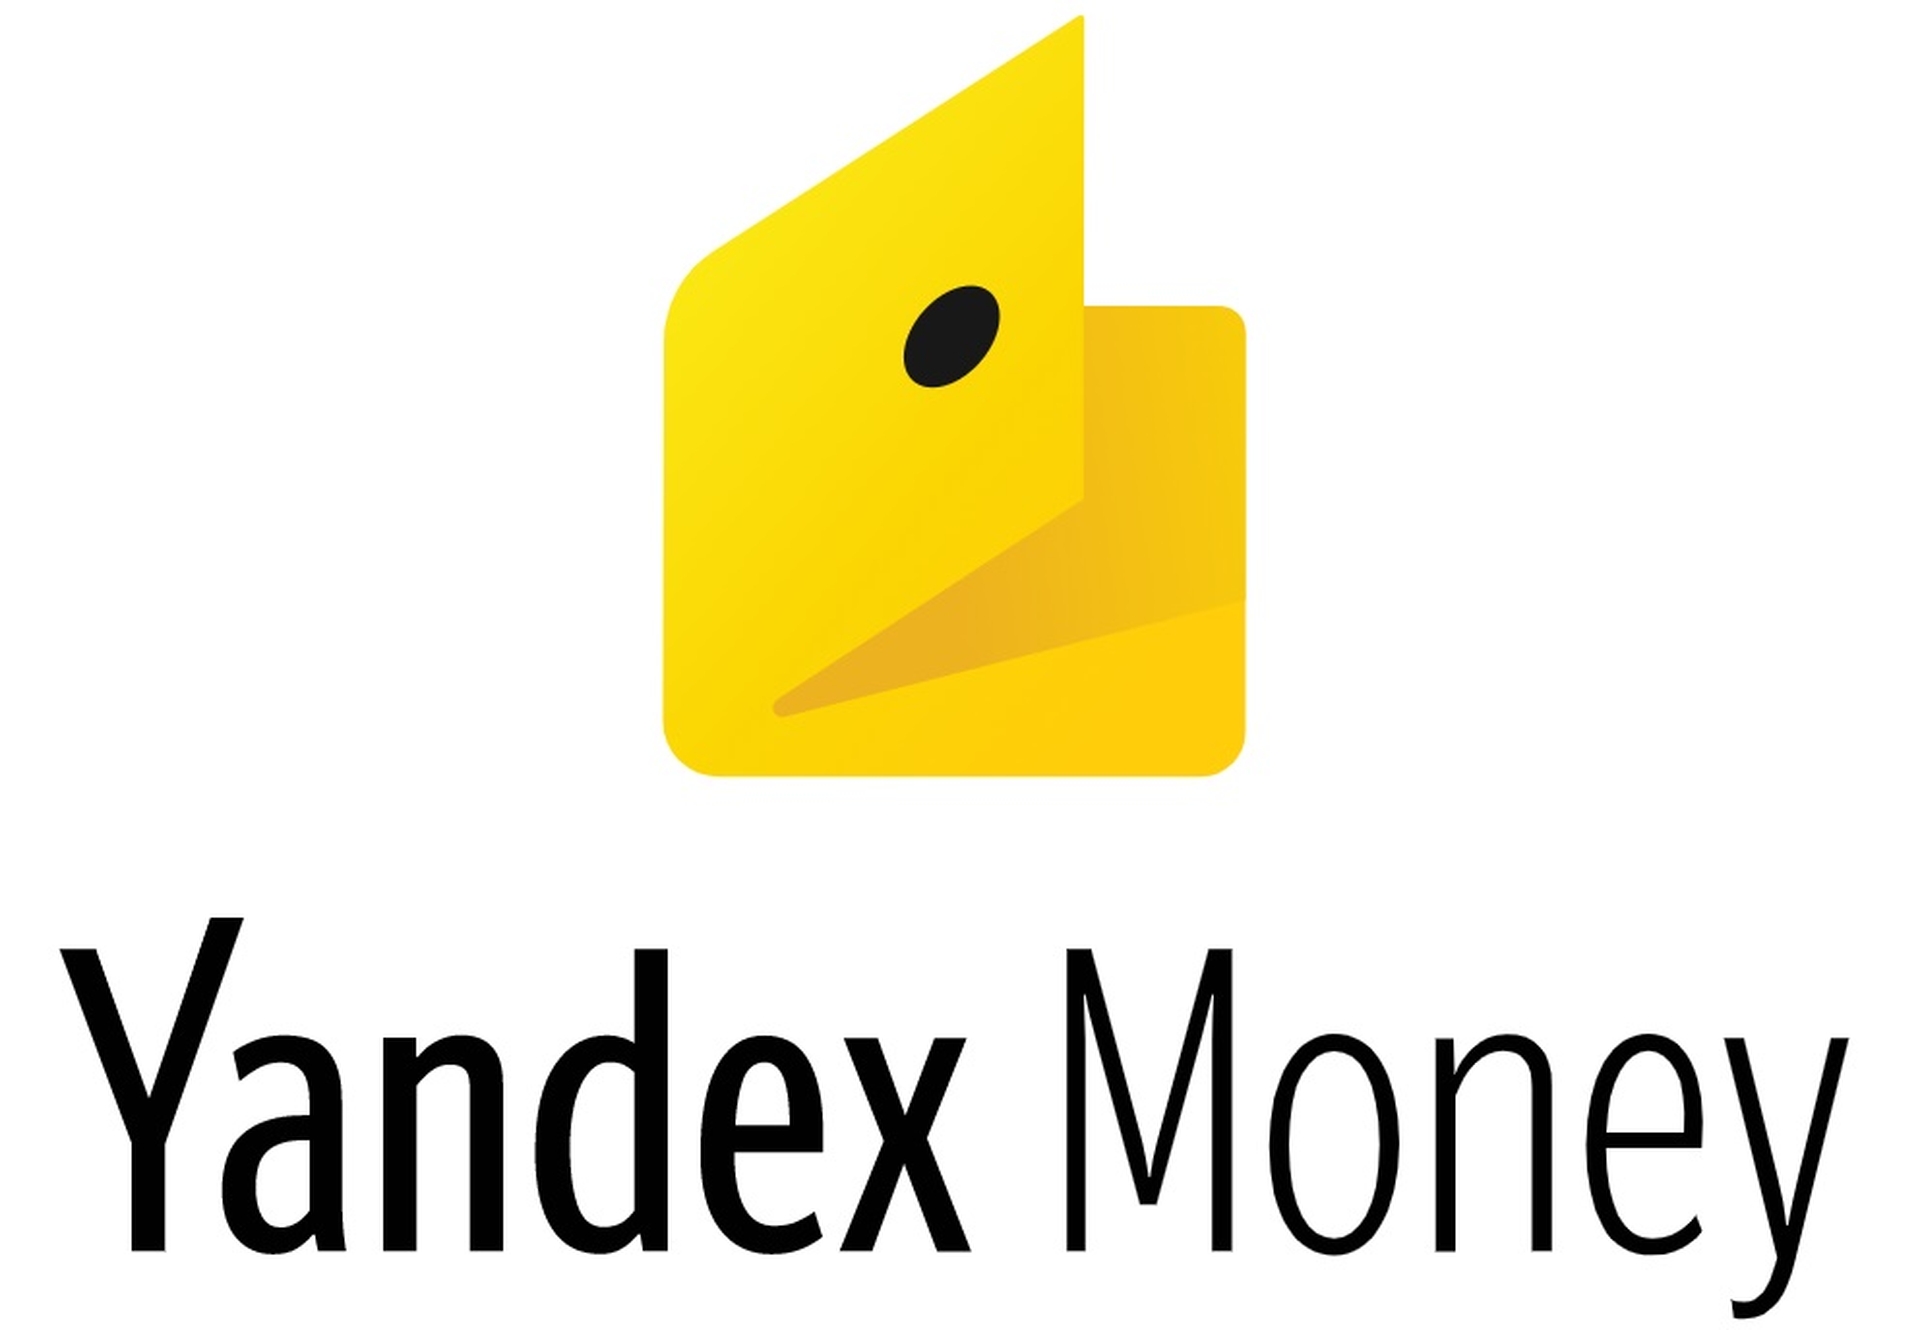 In questo articolo, tratteremo come acquistare Bitcoin con Yandex Money, così puoi utilizzare questo servizio mentre effettui il tuo prossimo acquisto di Bitcoin.